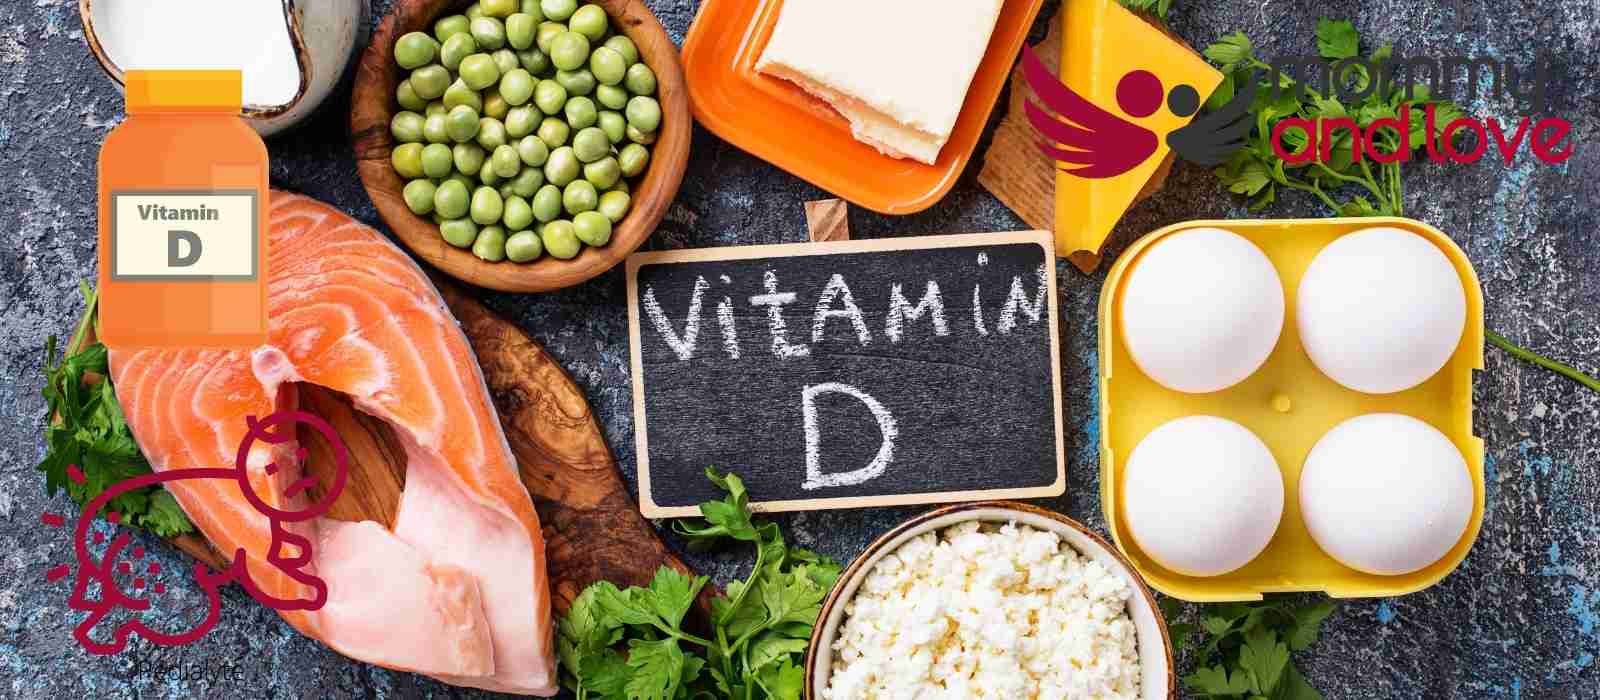 Can Vitamin D Cause Diaper Rash